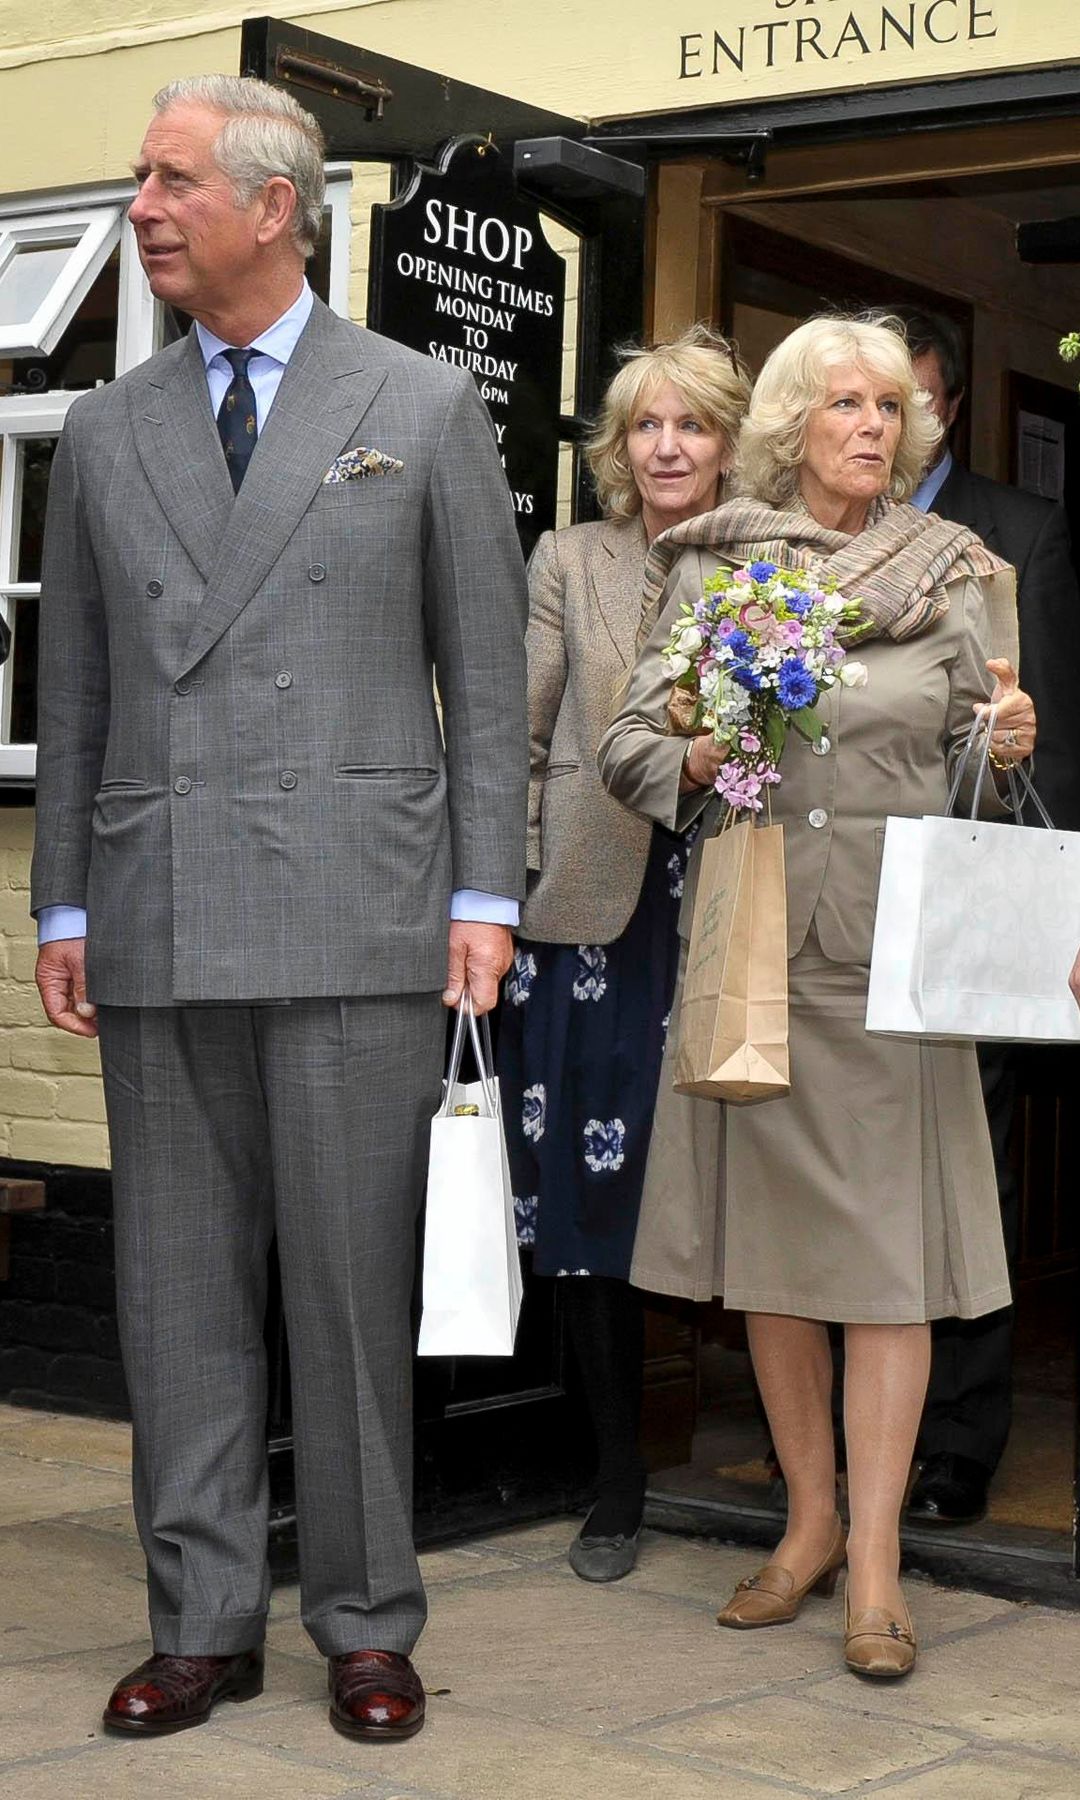 Carlos y Camilla, entonces como duques de Cornualles, durante un acto oficial en el Blandford Forum en el año 2011. Junto a ellos Annabel Elliot, una acompañante habitual de la reina Camilla